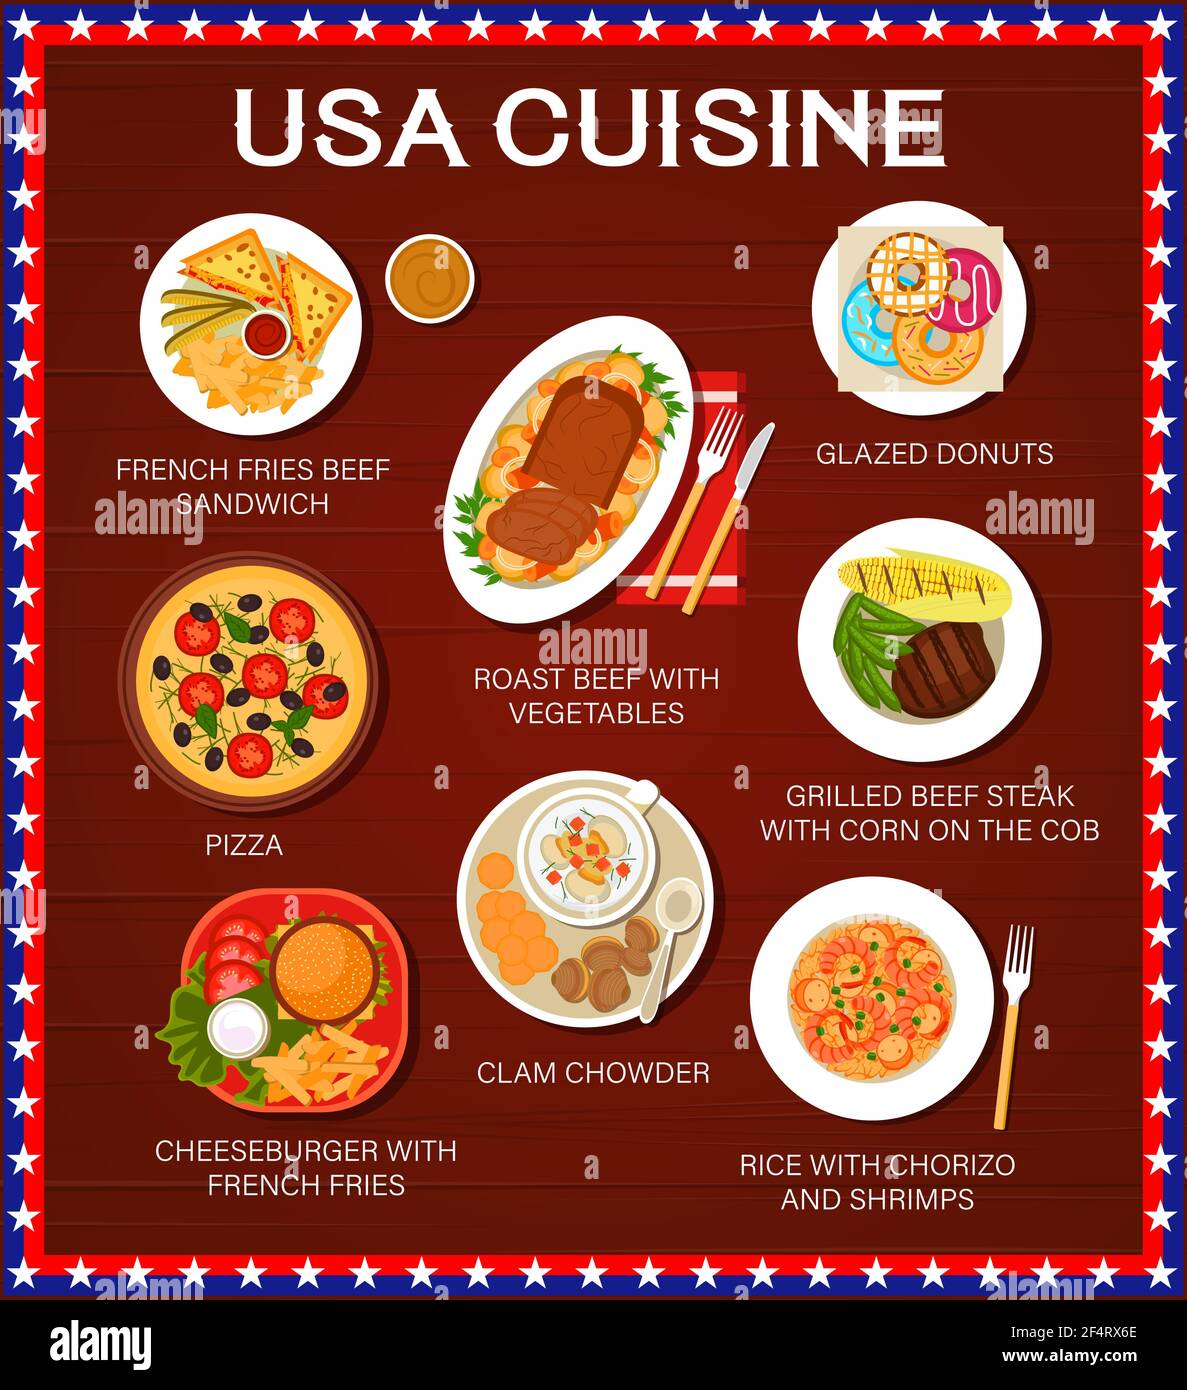 Cuisine américaine, plats et repas américains, restaurant traditionnel, déjeuner et dîner, affiche vectorielle. MENU AMÉRICAIN de sandwichs avec cuisine française Illustration de Vecteur